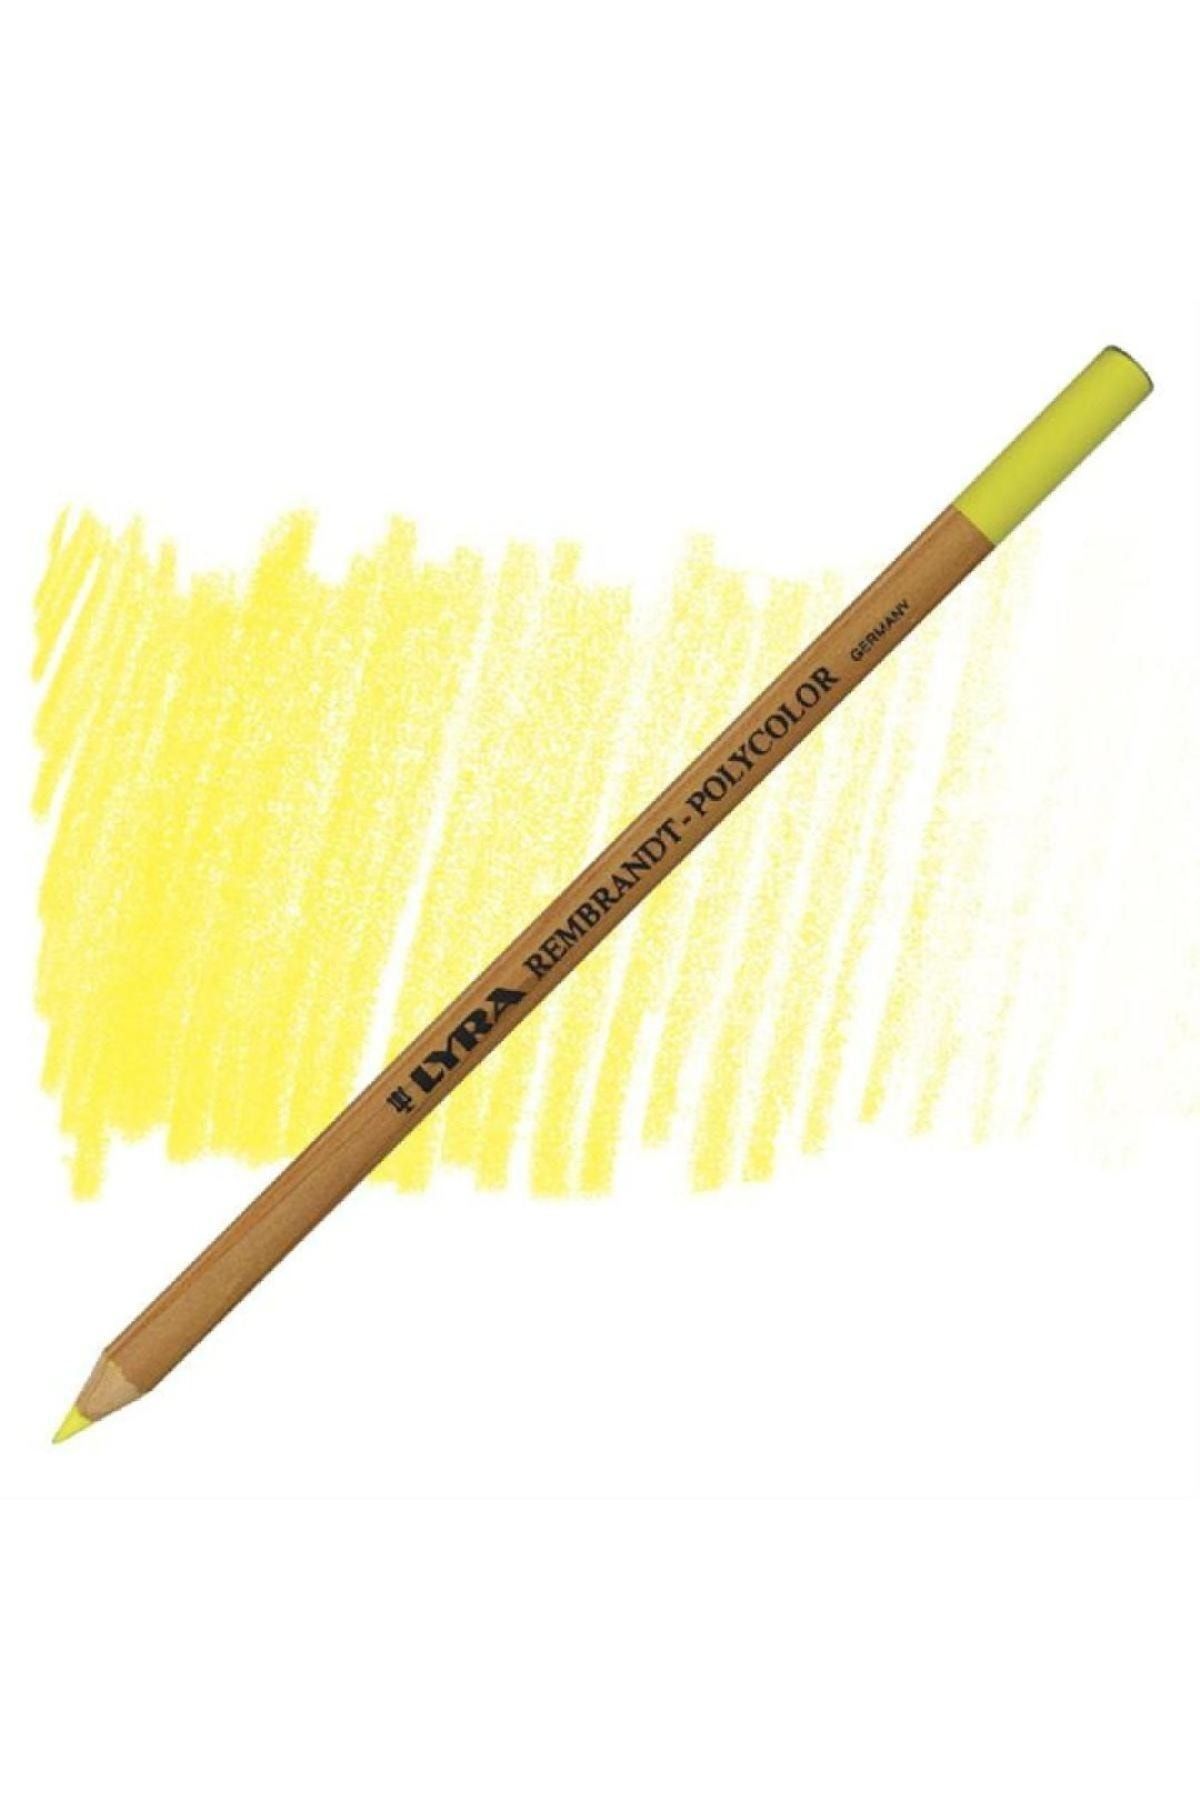 Lyra Rembrandt Polycolor Prof. Kuru Boya Kalemi Zinc Yellow 04